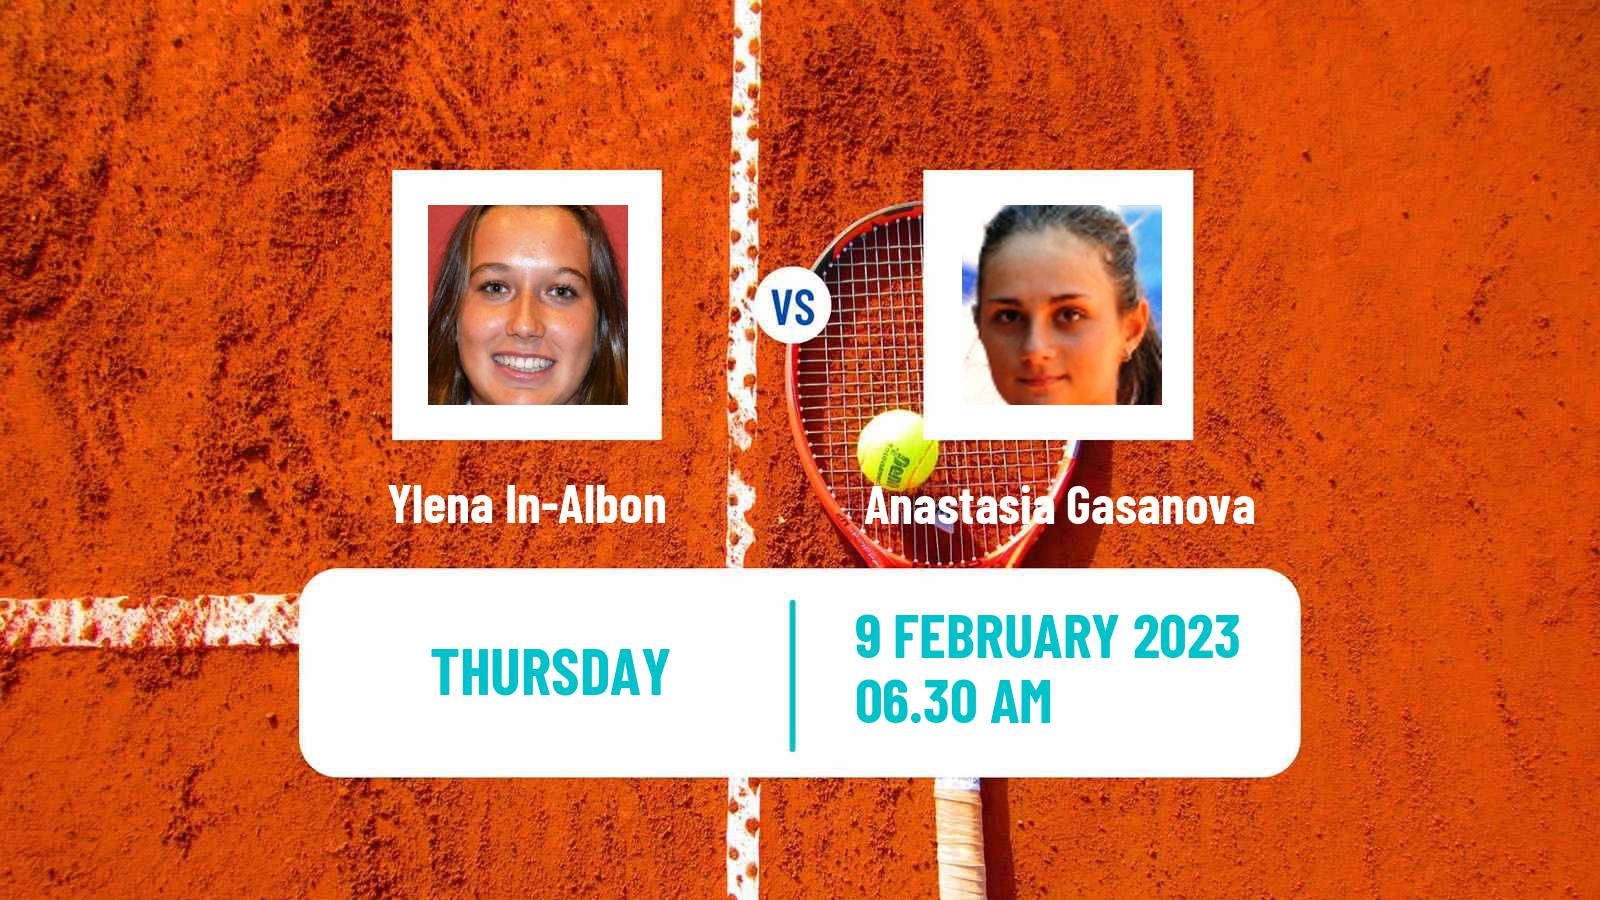 Tennis ITF Tournaments Ylena In-Albon - Anastasia Gasanova